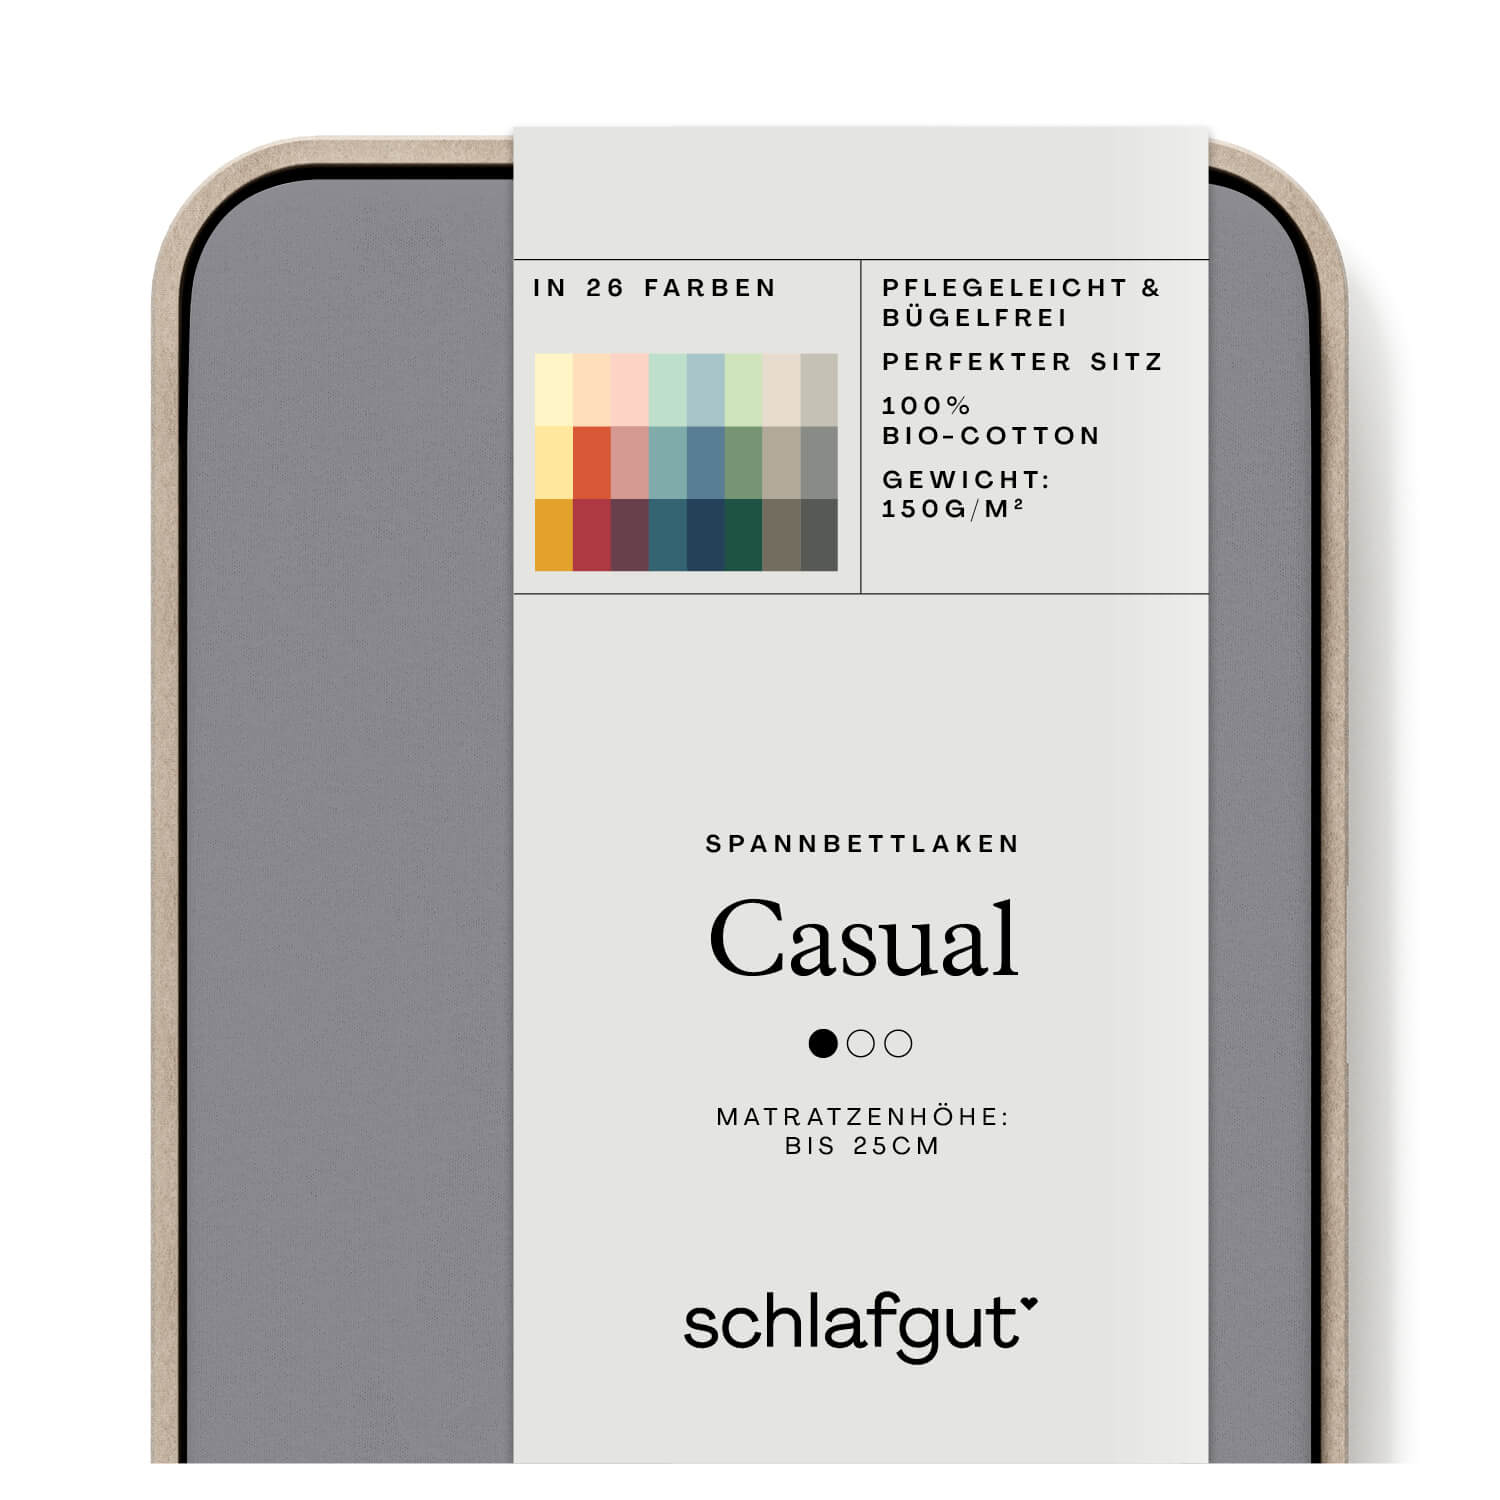 Das Produktbild vom Spannbettlaken der Reihe Casual in Farbe grey mid von Schlafgut